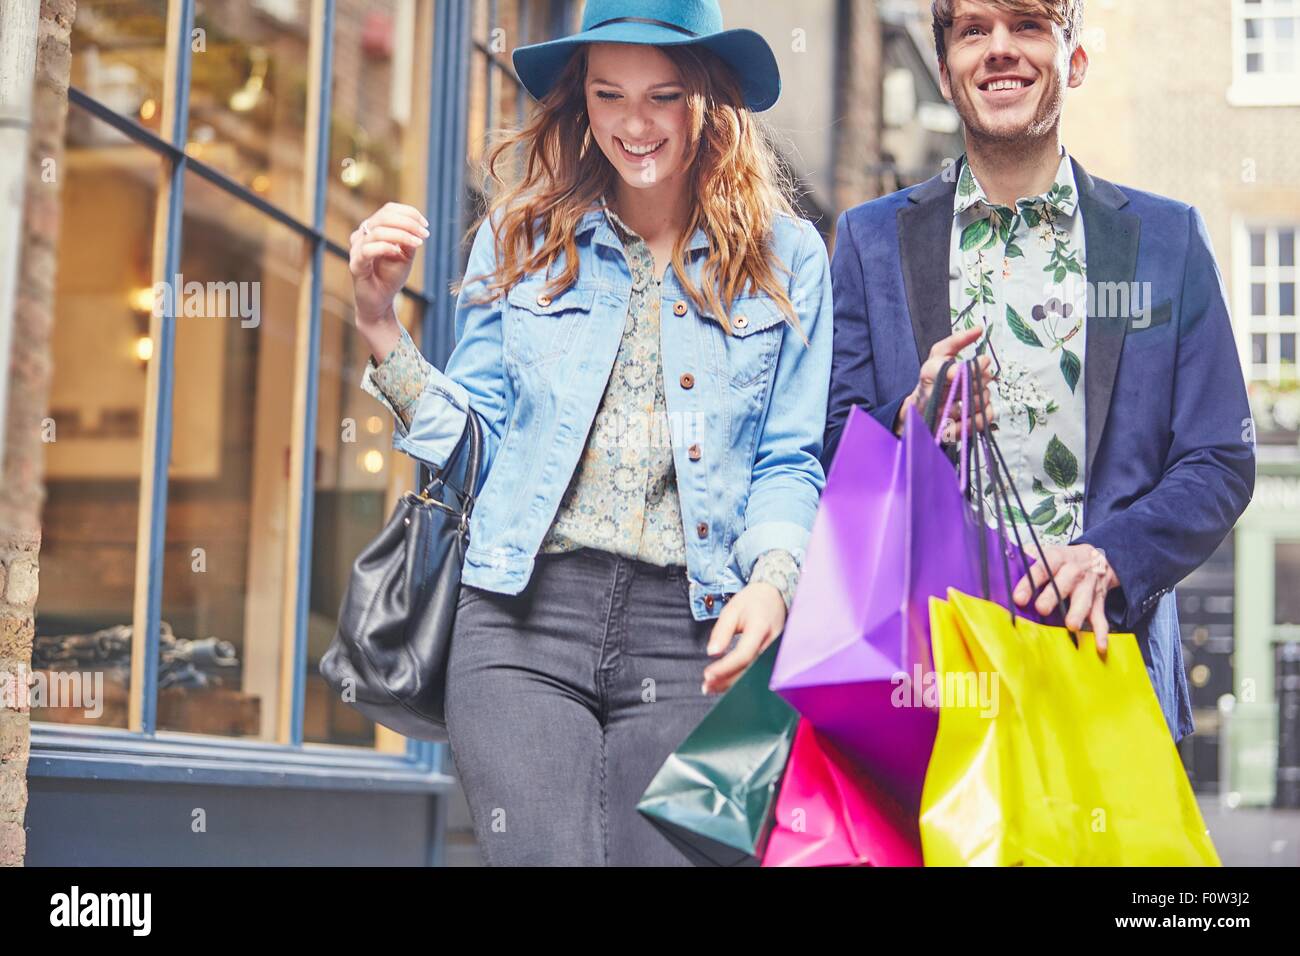 Stylish couple on shopping spree, London, UK Stock Photo